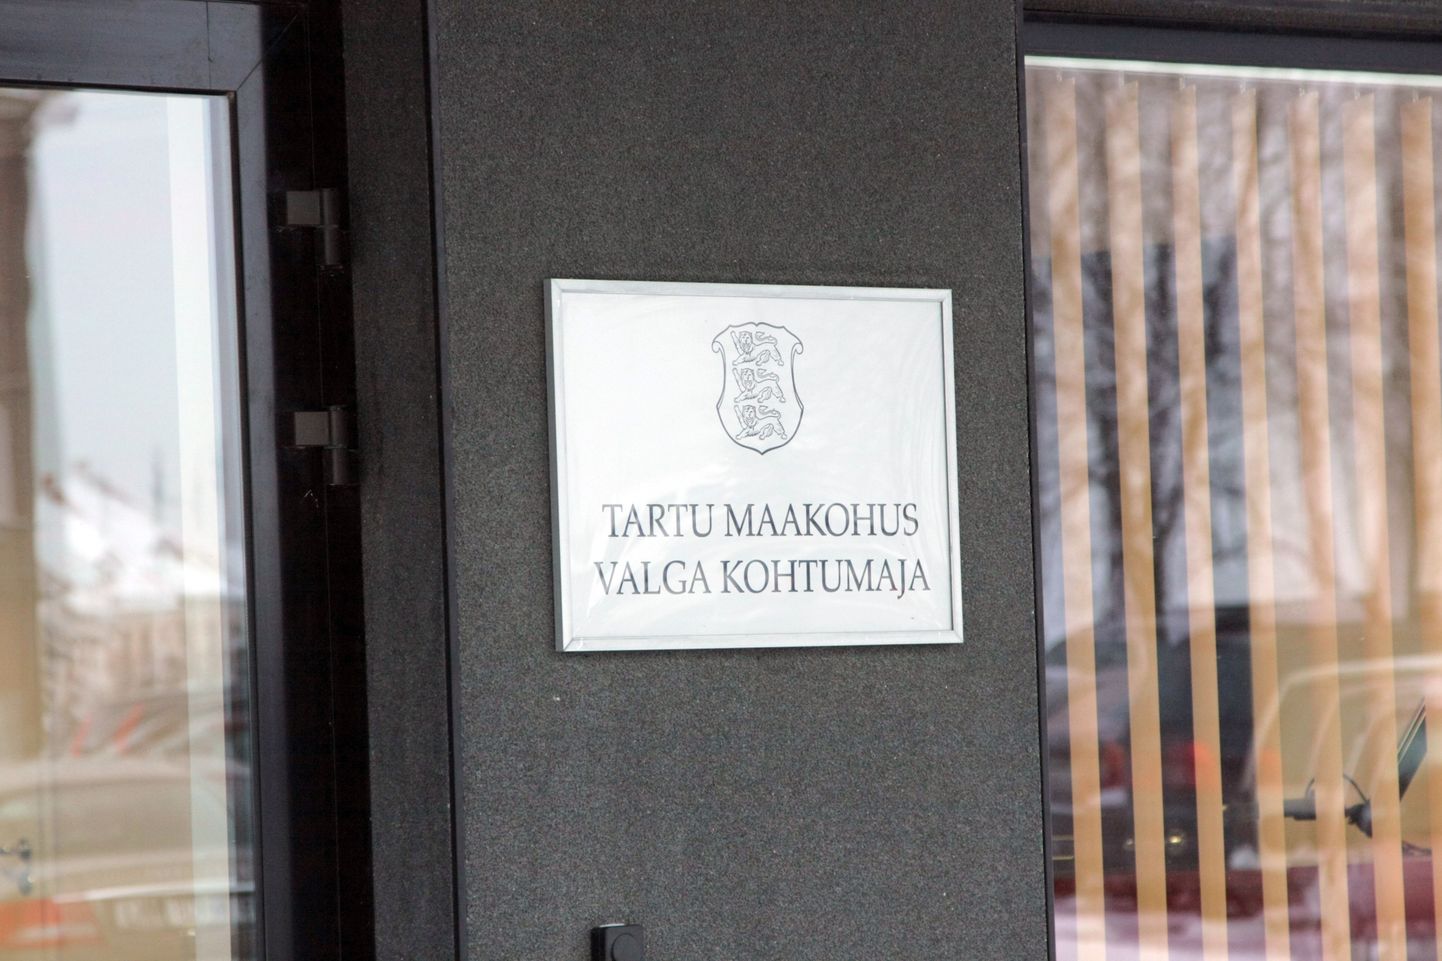 Kohtuprotsess süüdistatava üle algab Tartu maakohtu Valga kohtumajas juunis.